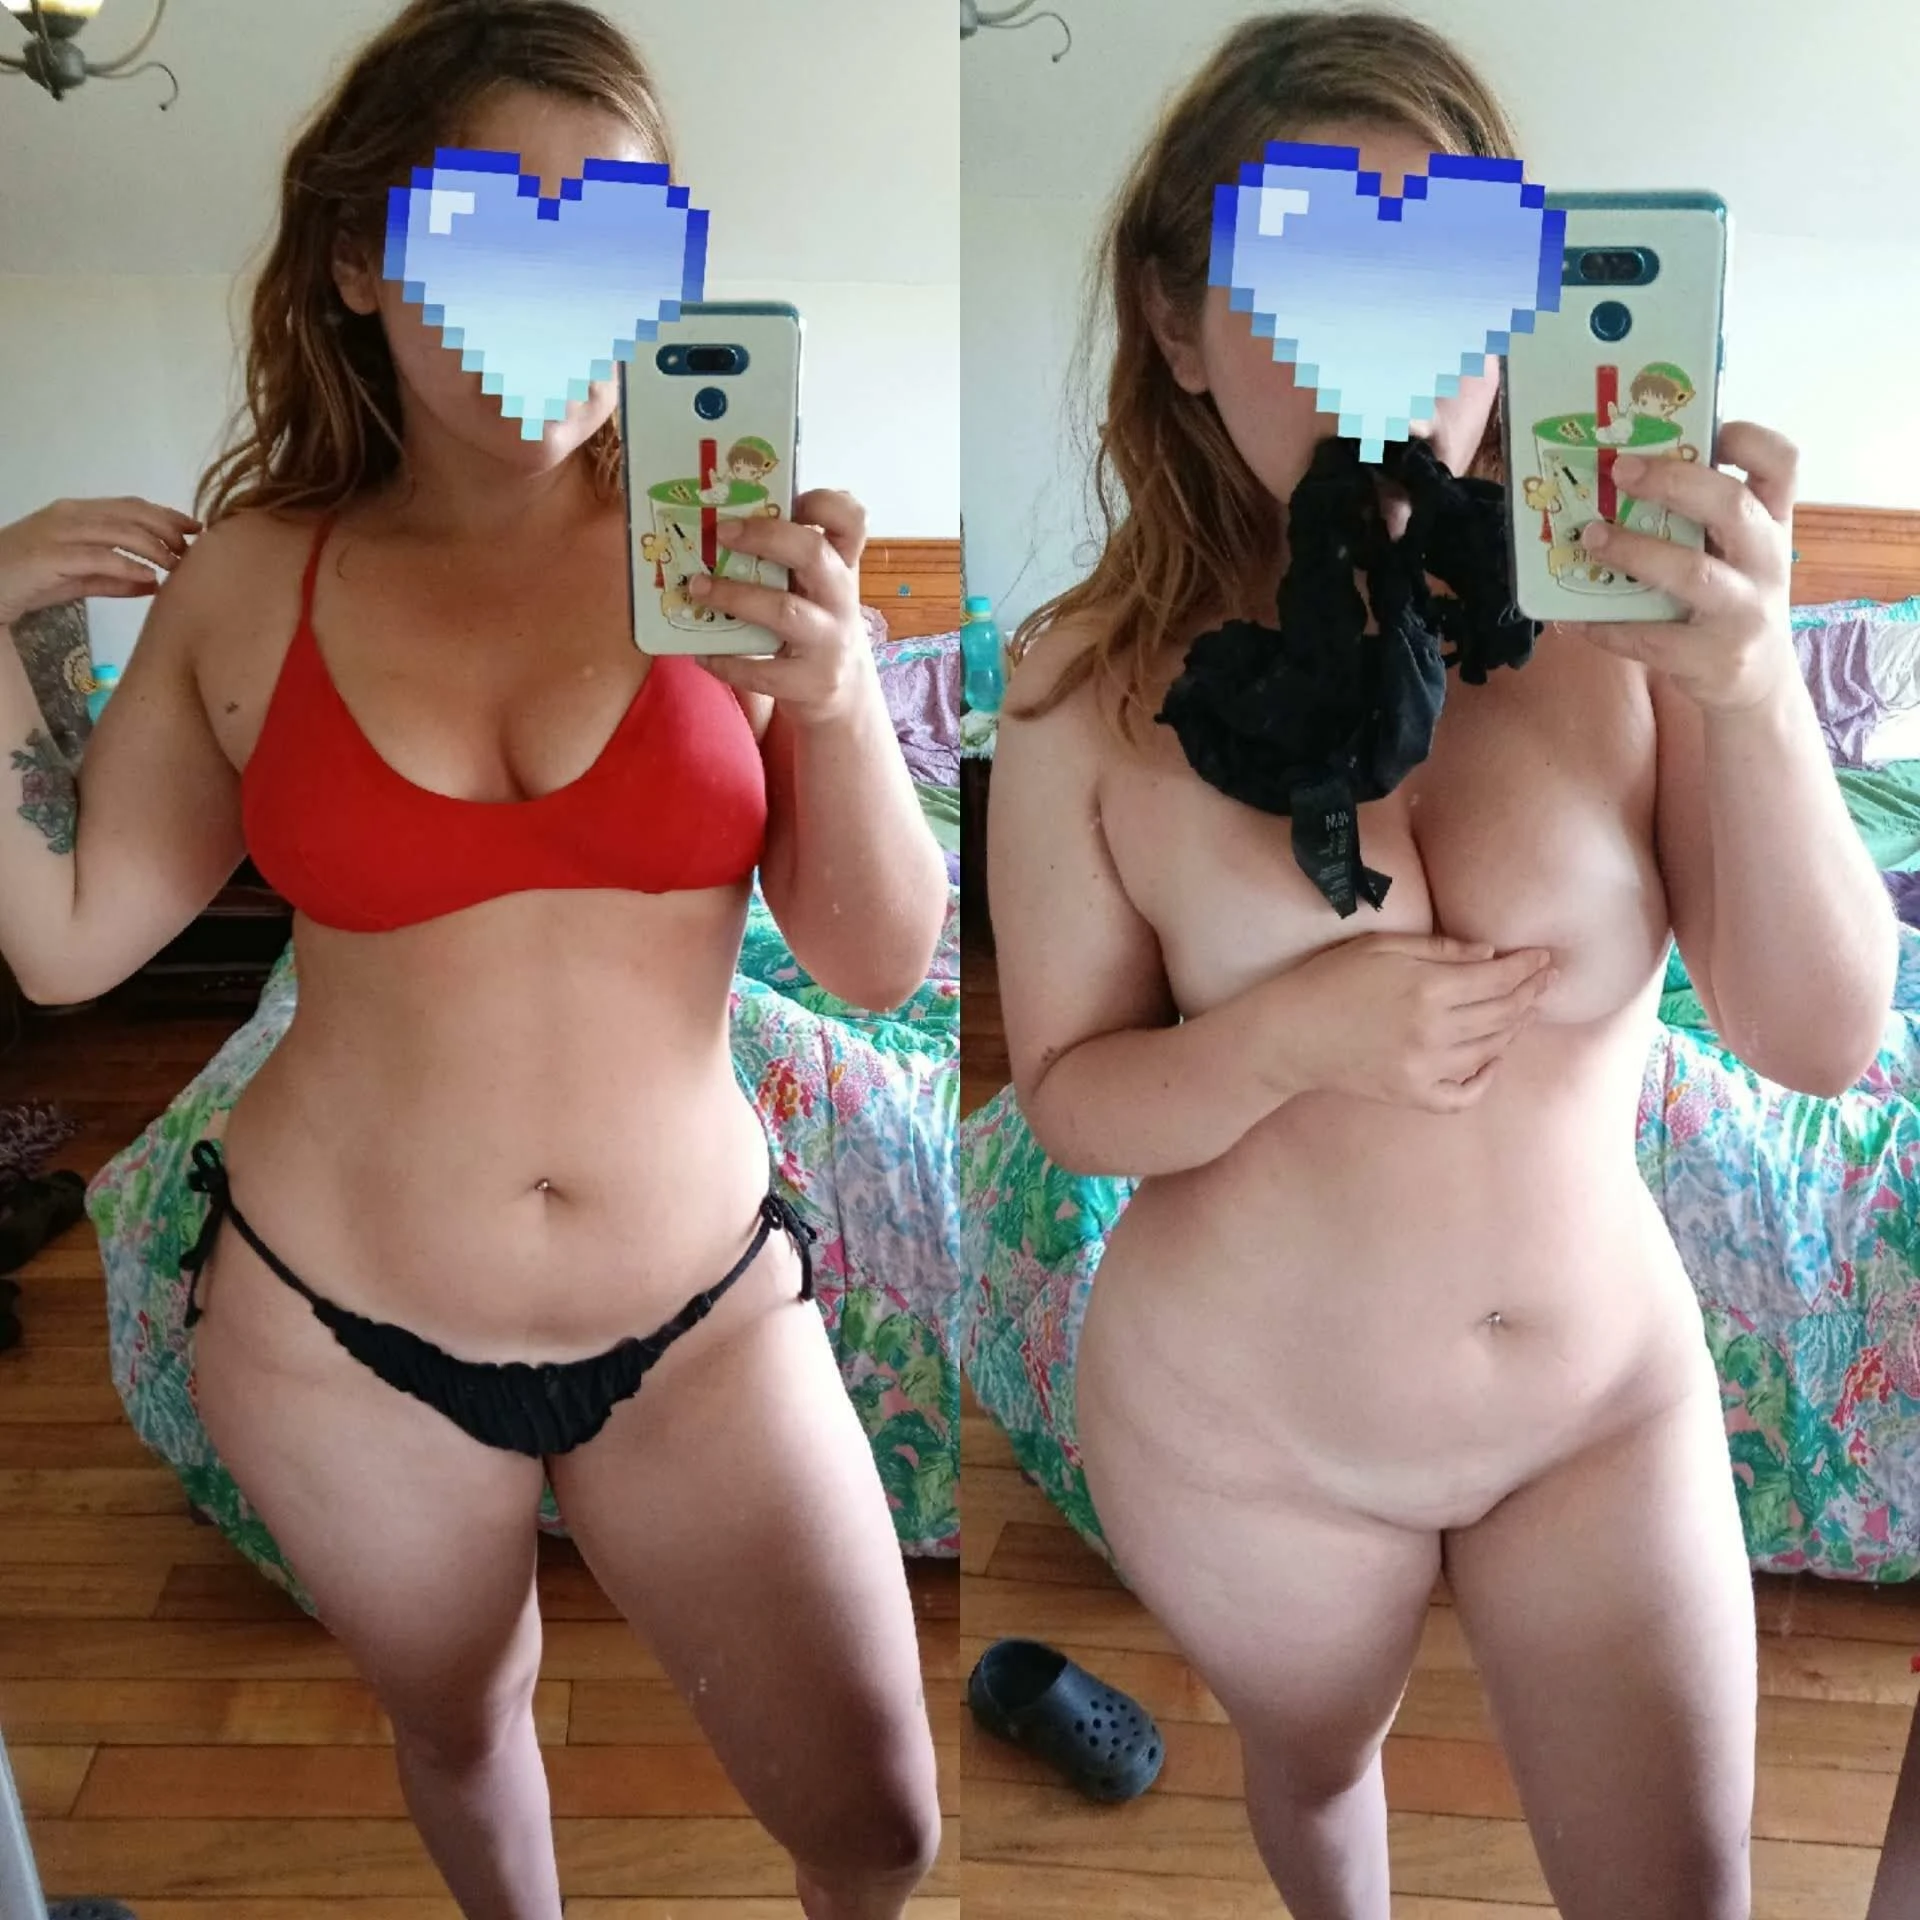 Can chubby girls look cute in bikinis?